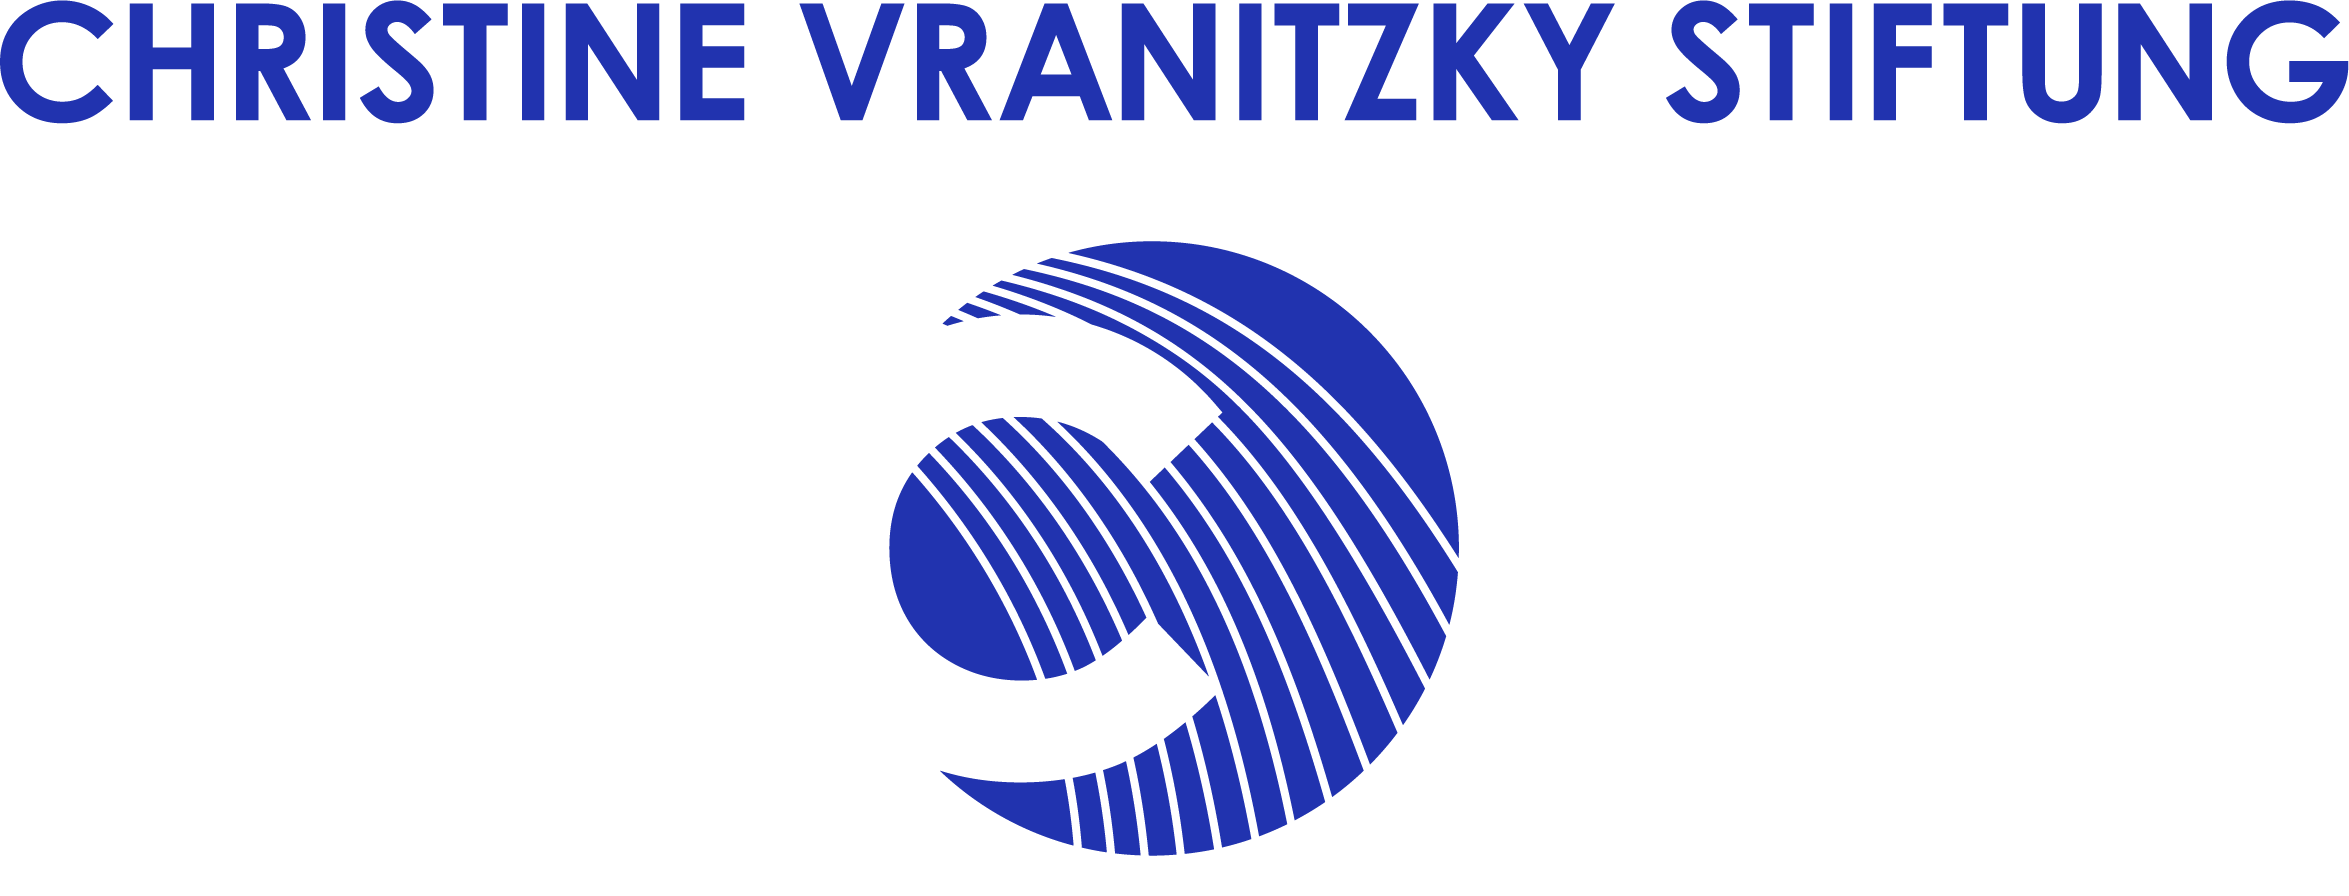 Logo Christine Vranitzky Stiftung 